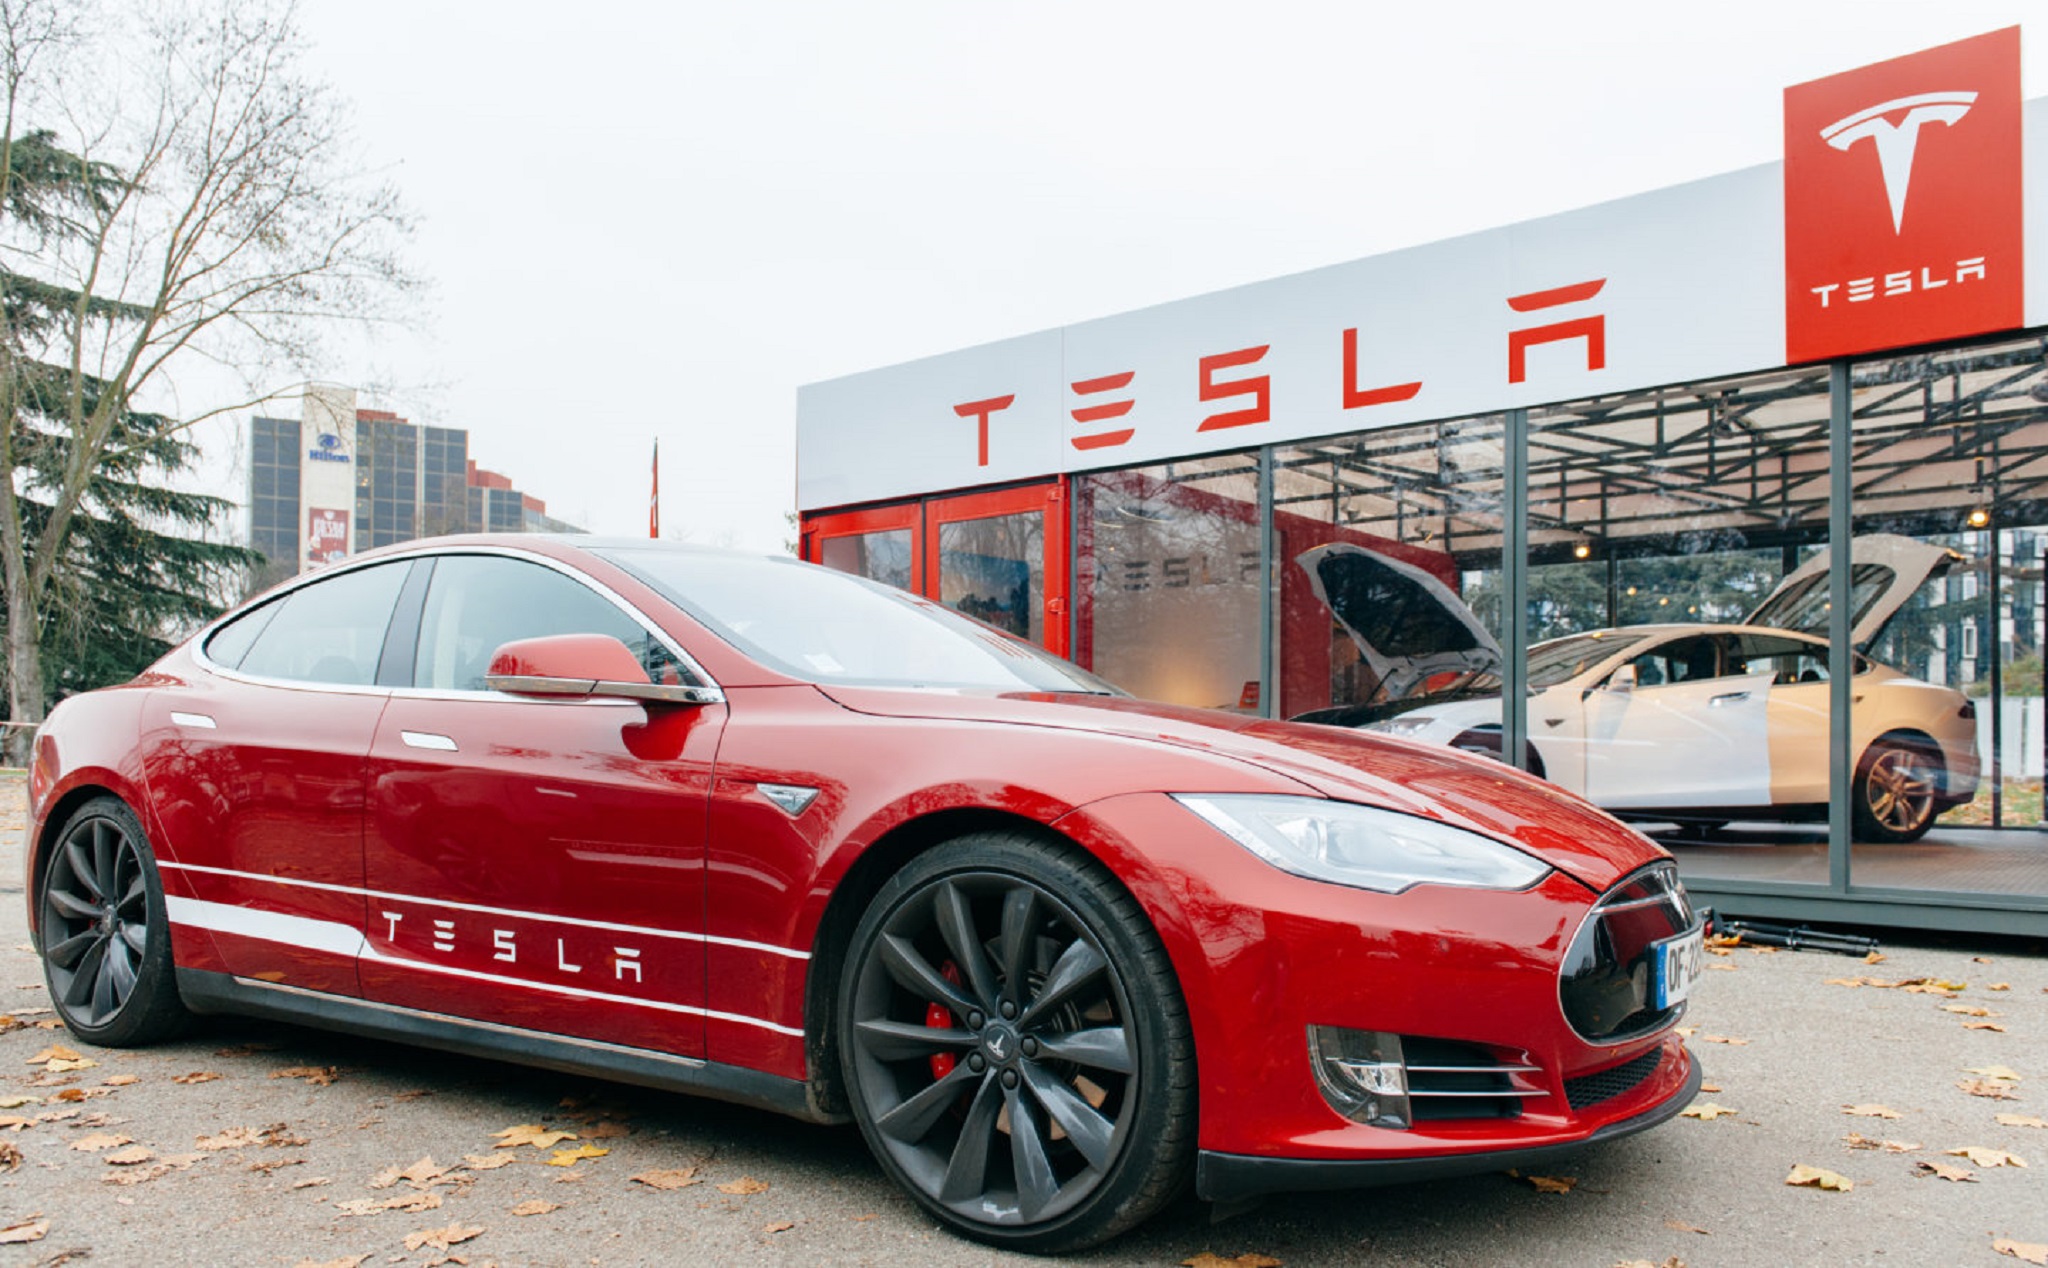 Elon Musk muốn chuyển Tesla thành công ty tư nhân để hoạt động hiệu quả hơn